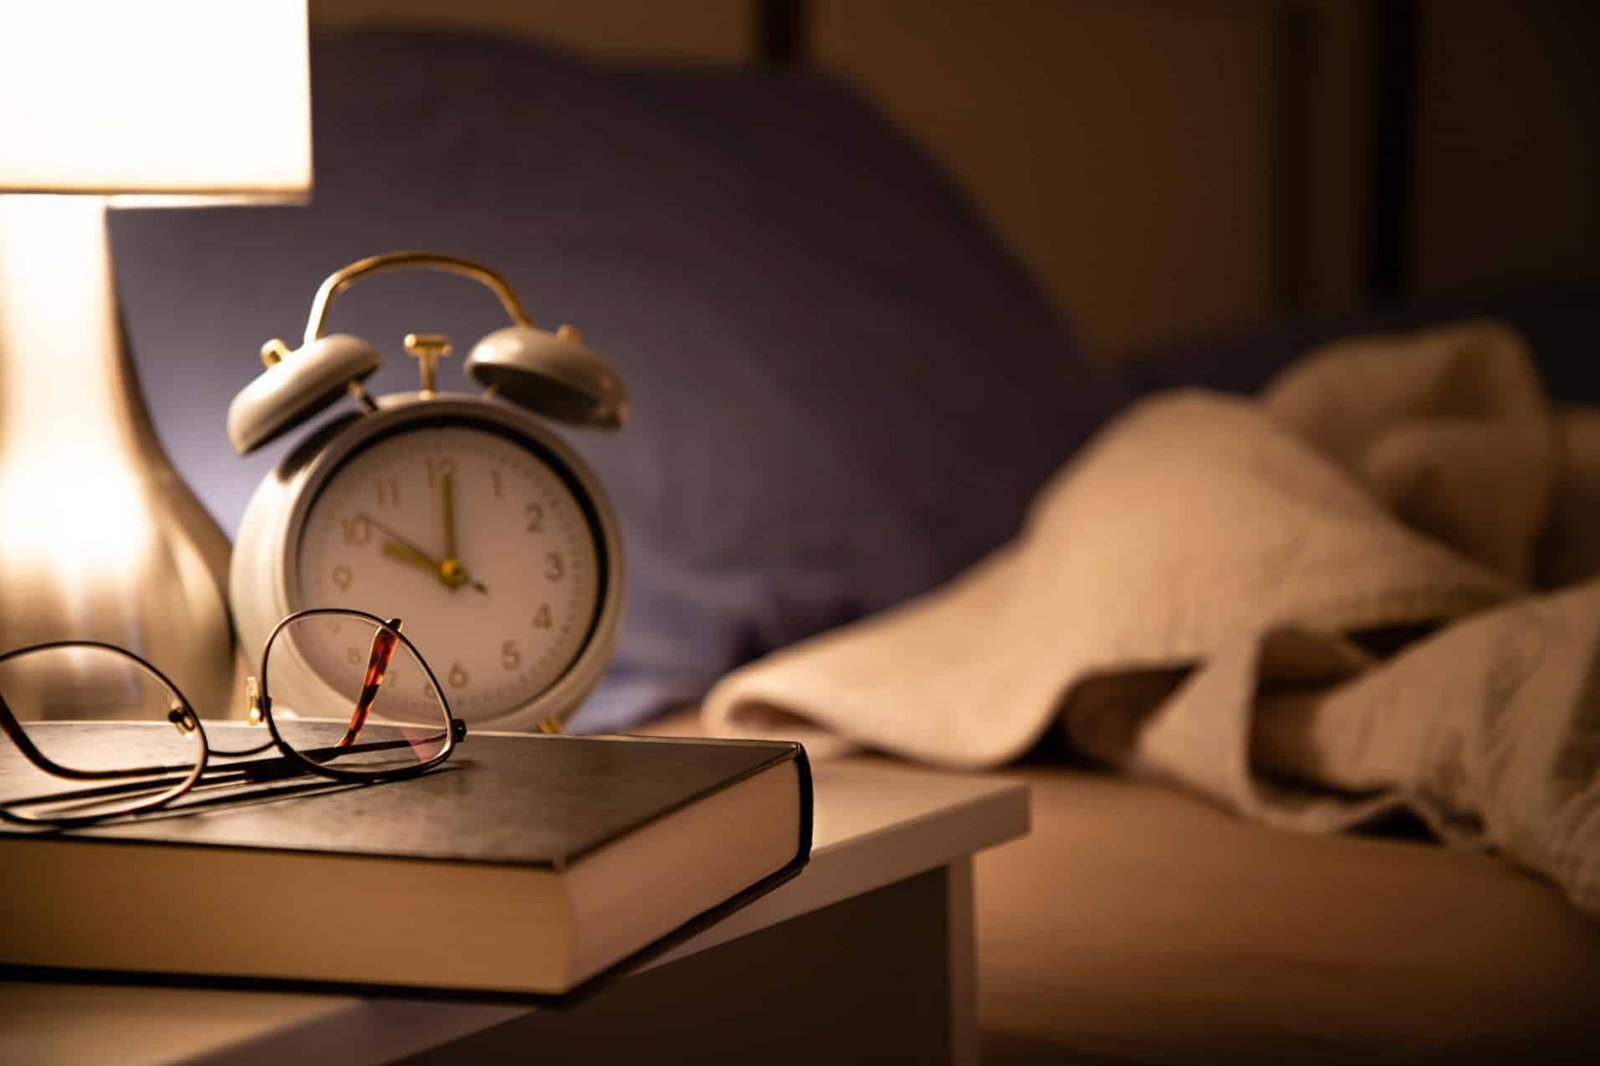 النوم القليل يزيد خطر السكتة الدماغية والنوبات القلبية لدى النساء